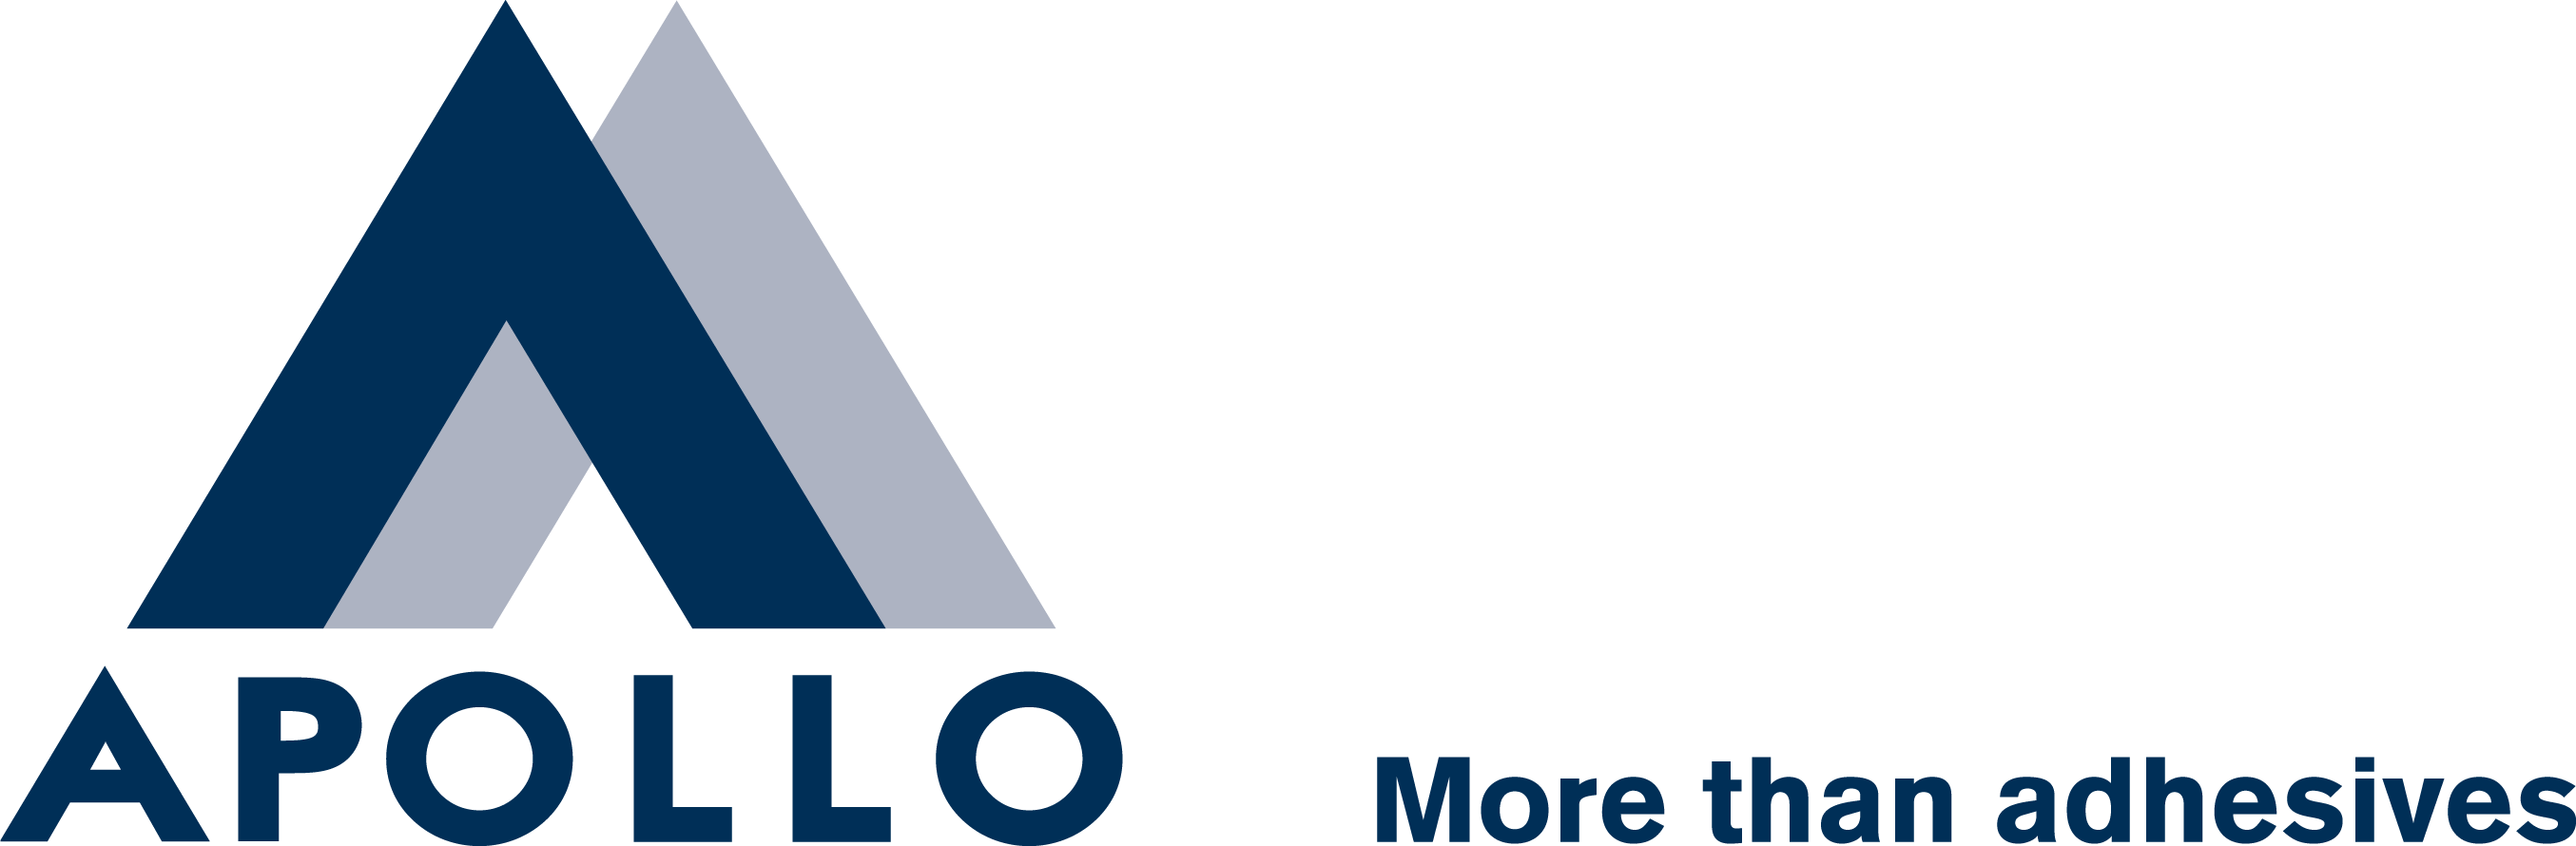 Apollo Safety Training logo